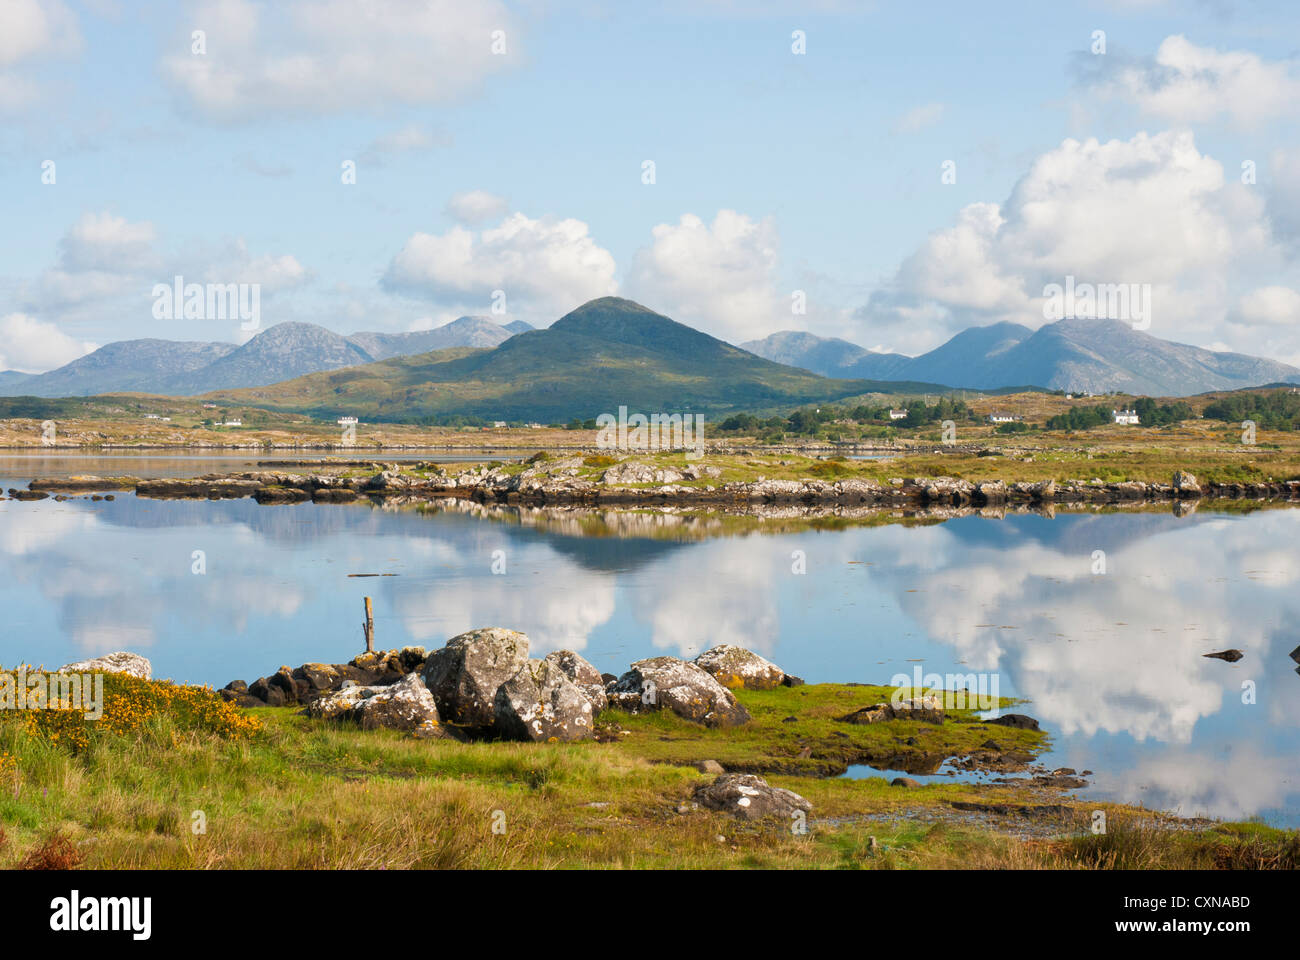 Los pintorescos lagos y montañas de Connemara, Condado de Galway, Irlanda, con nubes y montañas reflejadas en el lago Foto de stock